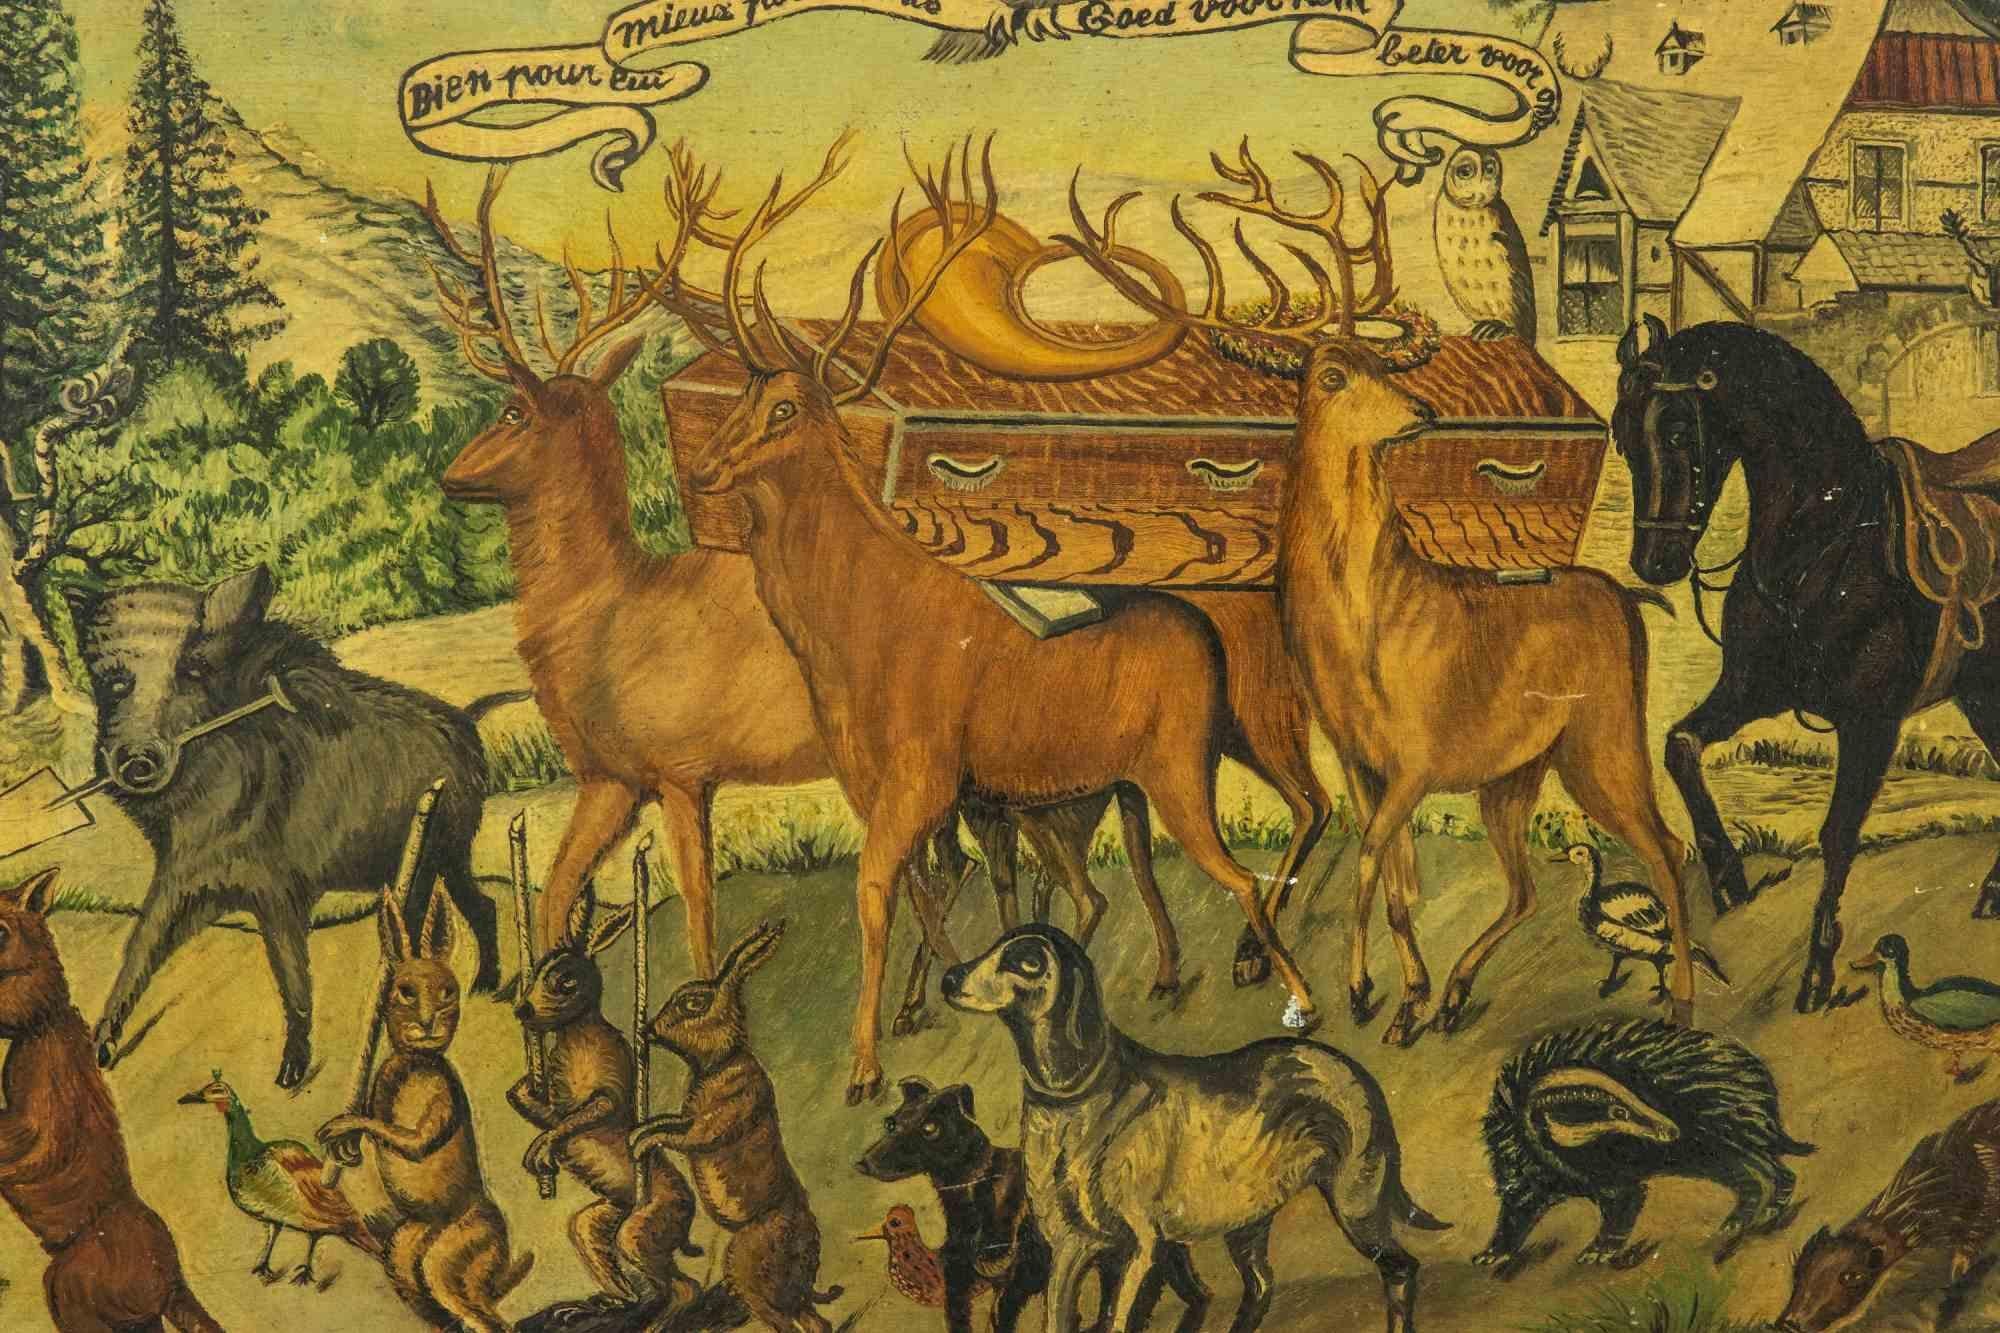 Jägers Begräbnis ist ein modernes Kunstwerk aus dem frühen 20. Jahrhundert.

Temperamalerei auf Karton.

Handsigniert am unteren Rand.

Inklusive Rahmen: 60 x 86 cm